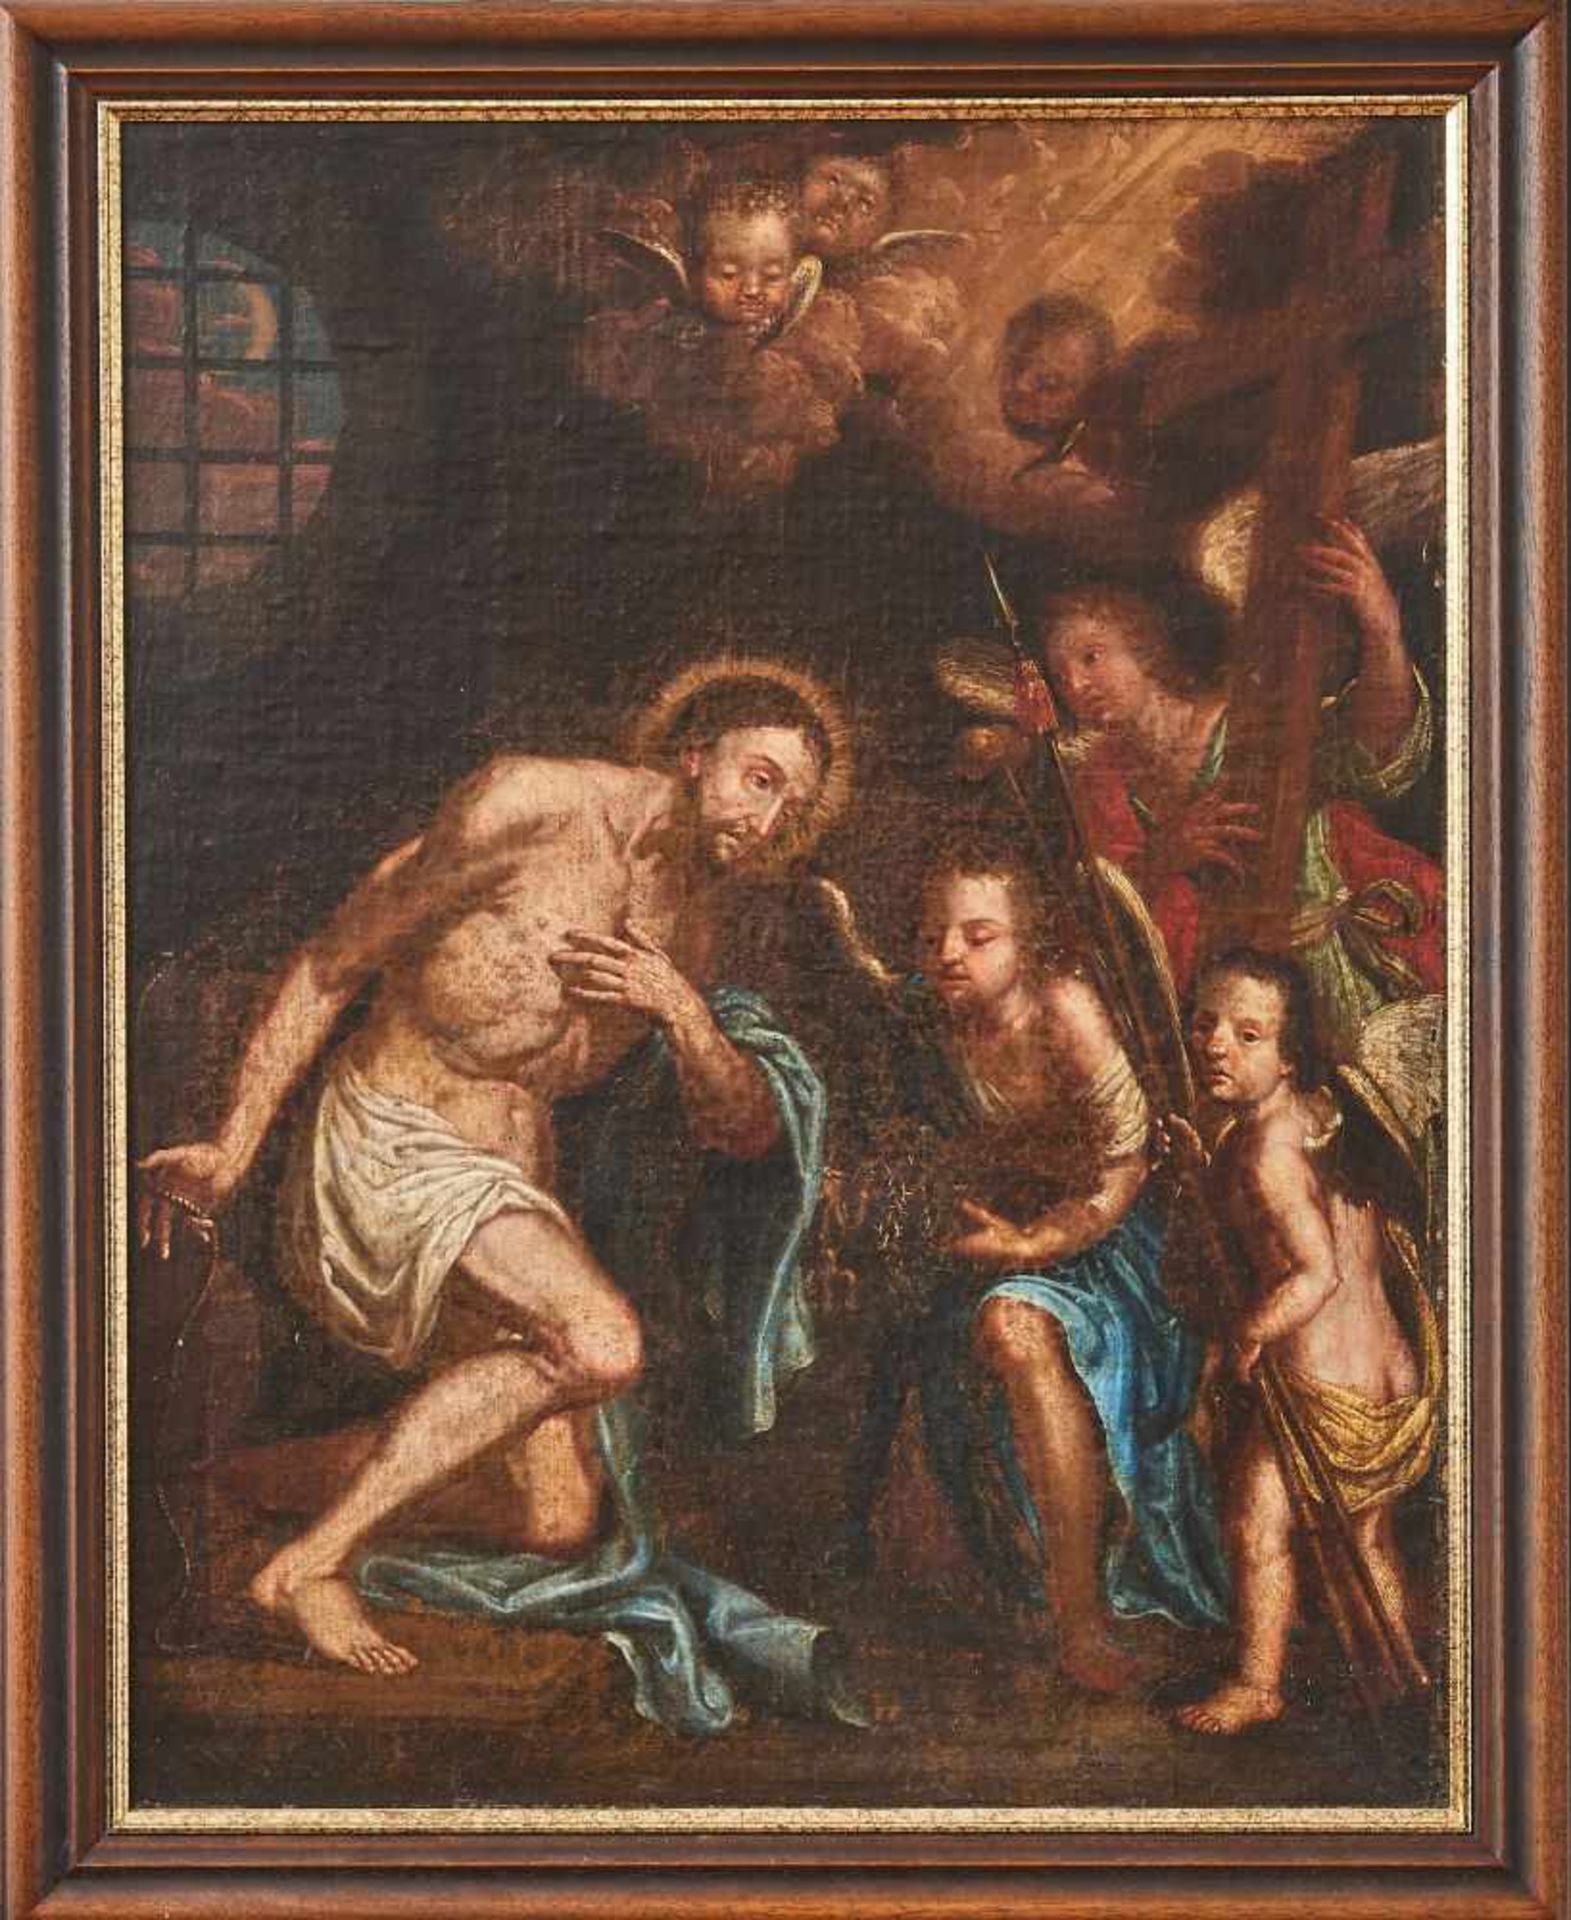 Christus mit Engeln18. Jhdt, Öl auf Leinwand, auf Holz aufgezogen, doubliert, gerahmt. 81 x 63 cm- - - Bild 2 aus 2